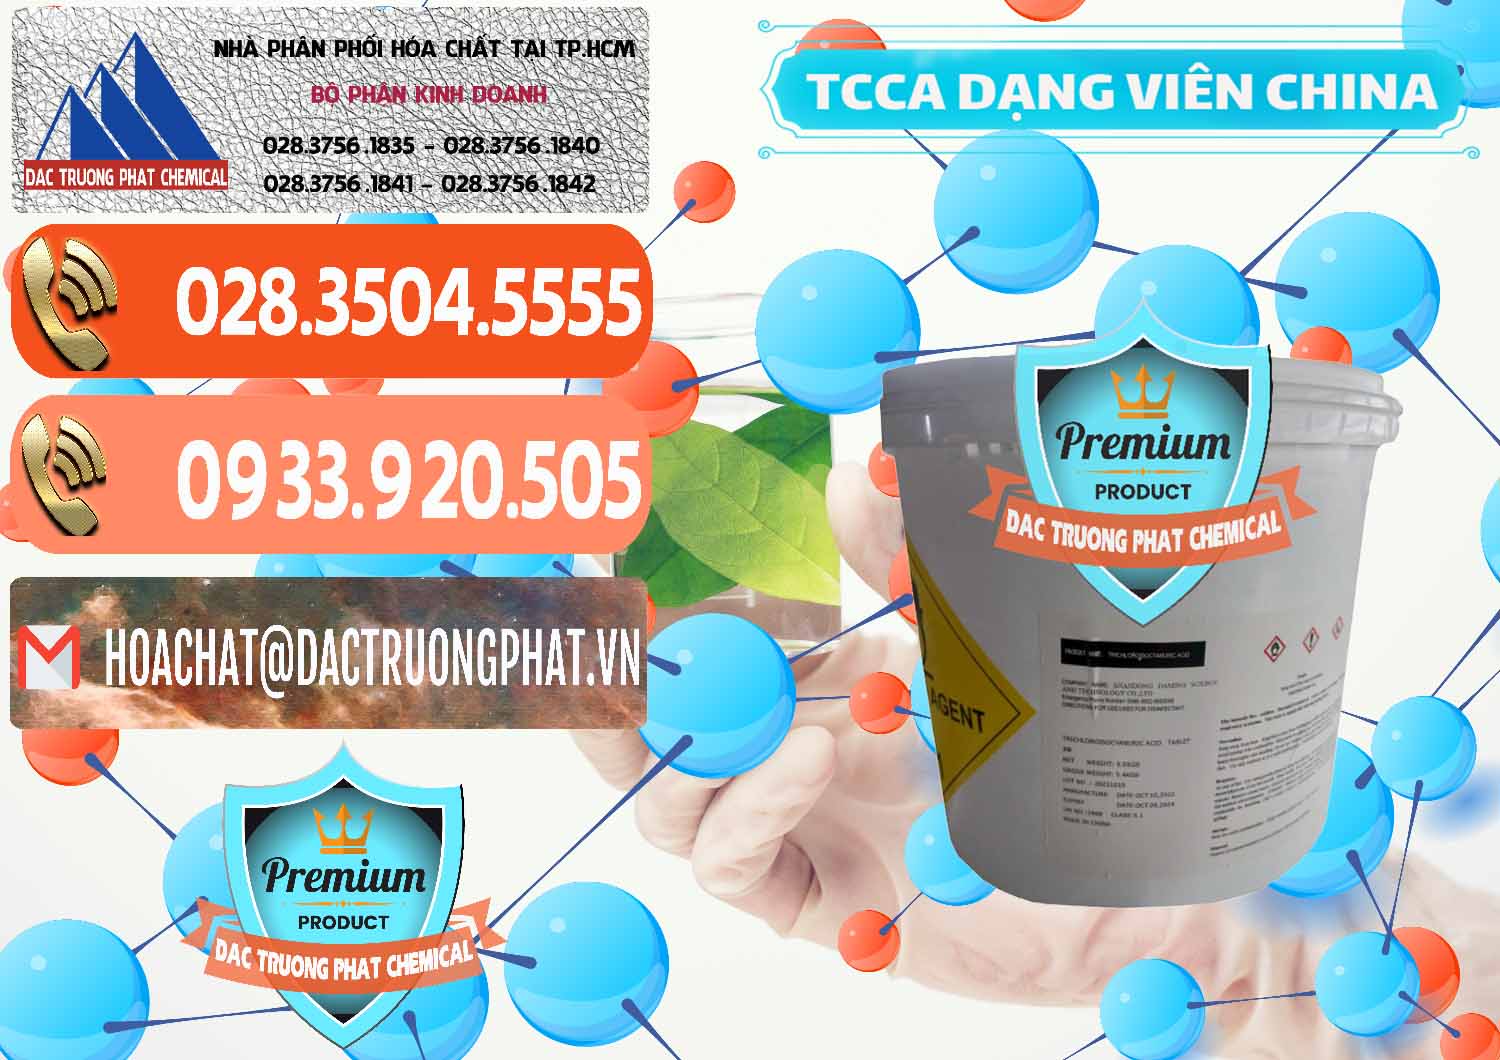 Công ty phân phối & bán TCCA - Acid Trichloroisocyanuric Dạng Viên Thùng 5kg Trung Quốc China - 0379 - Nơi bán và phân phối hóa chất tại TP.HCM - hoachatmientay.com